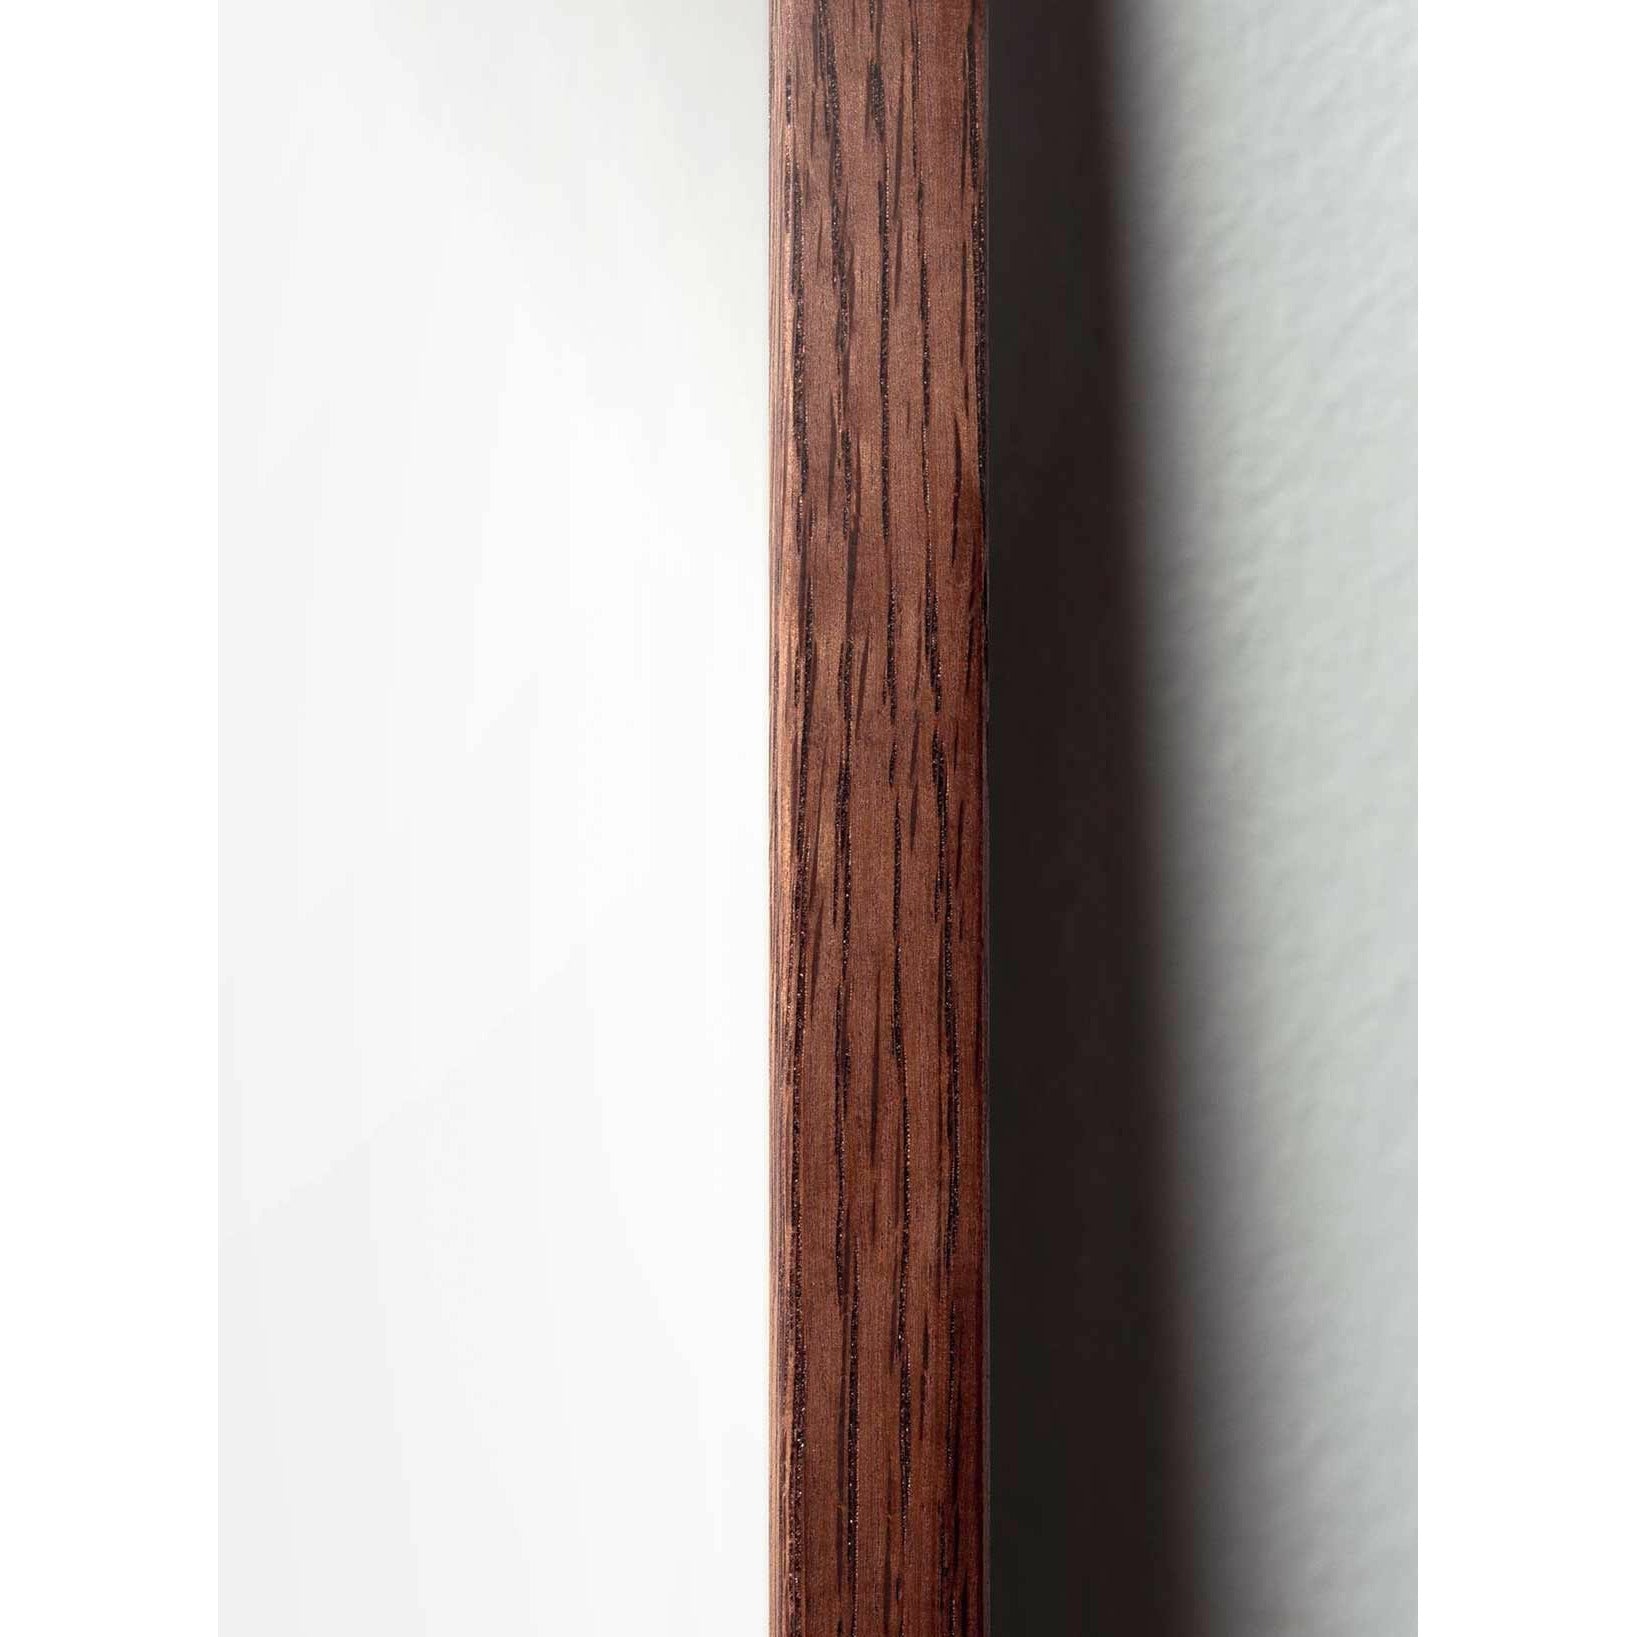 Poster classico di cono di pino da un'idea, cornice in legno scuro 50x70 cm, sfondo nero